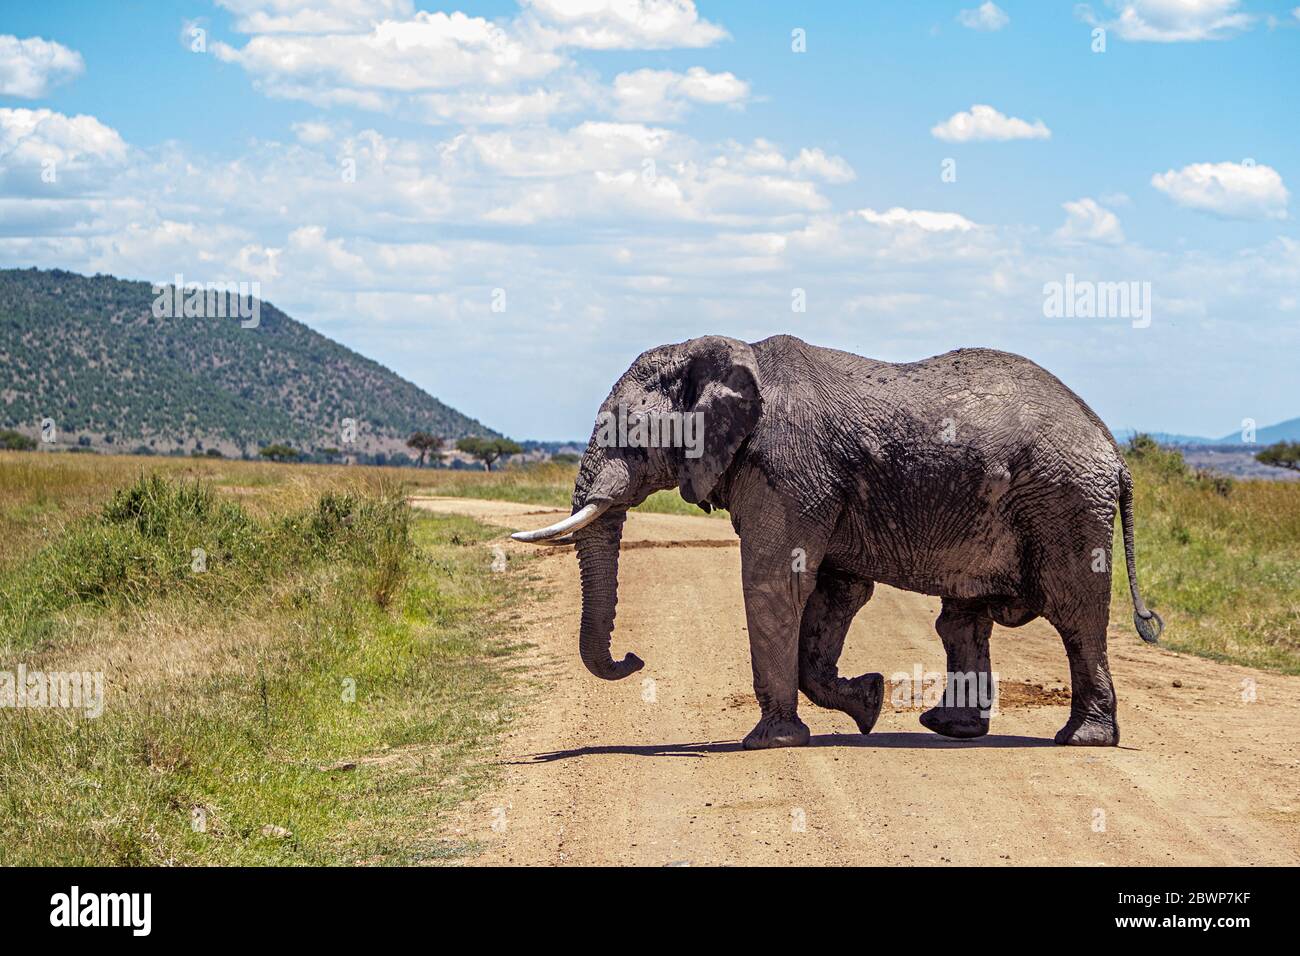 Grande route de passage à l'éléphant d'Afrique pour véhicules de safari dans la région de Masai Mara, Kenya, Afrique Banque D'Images